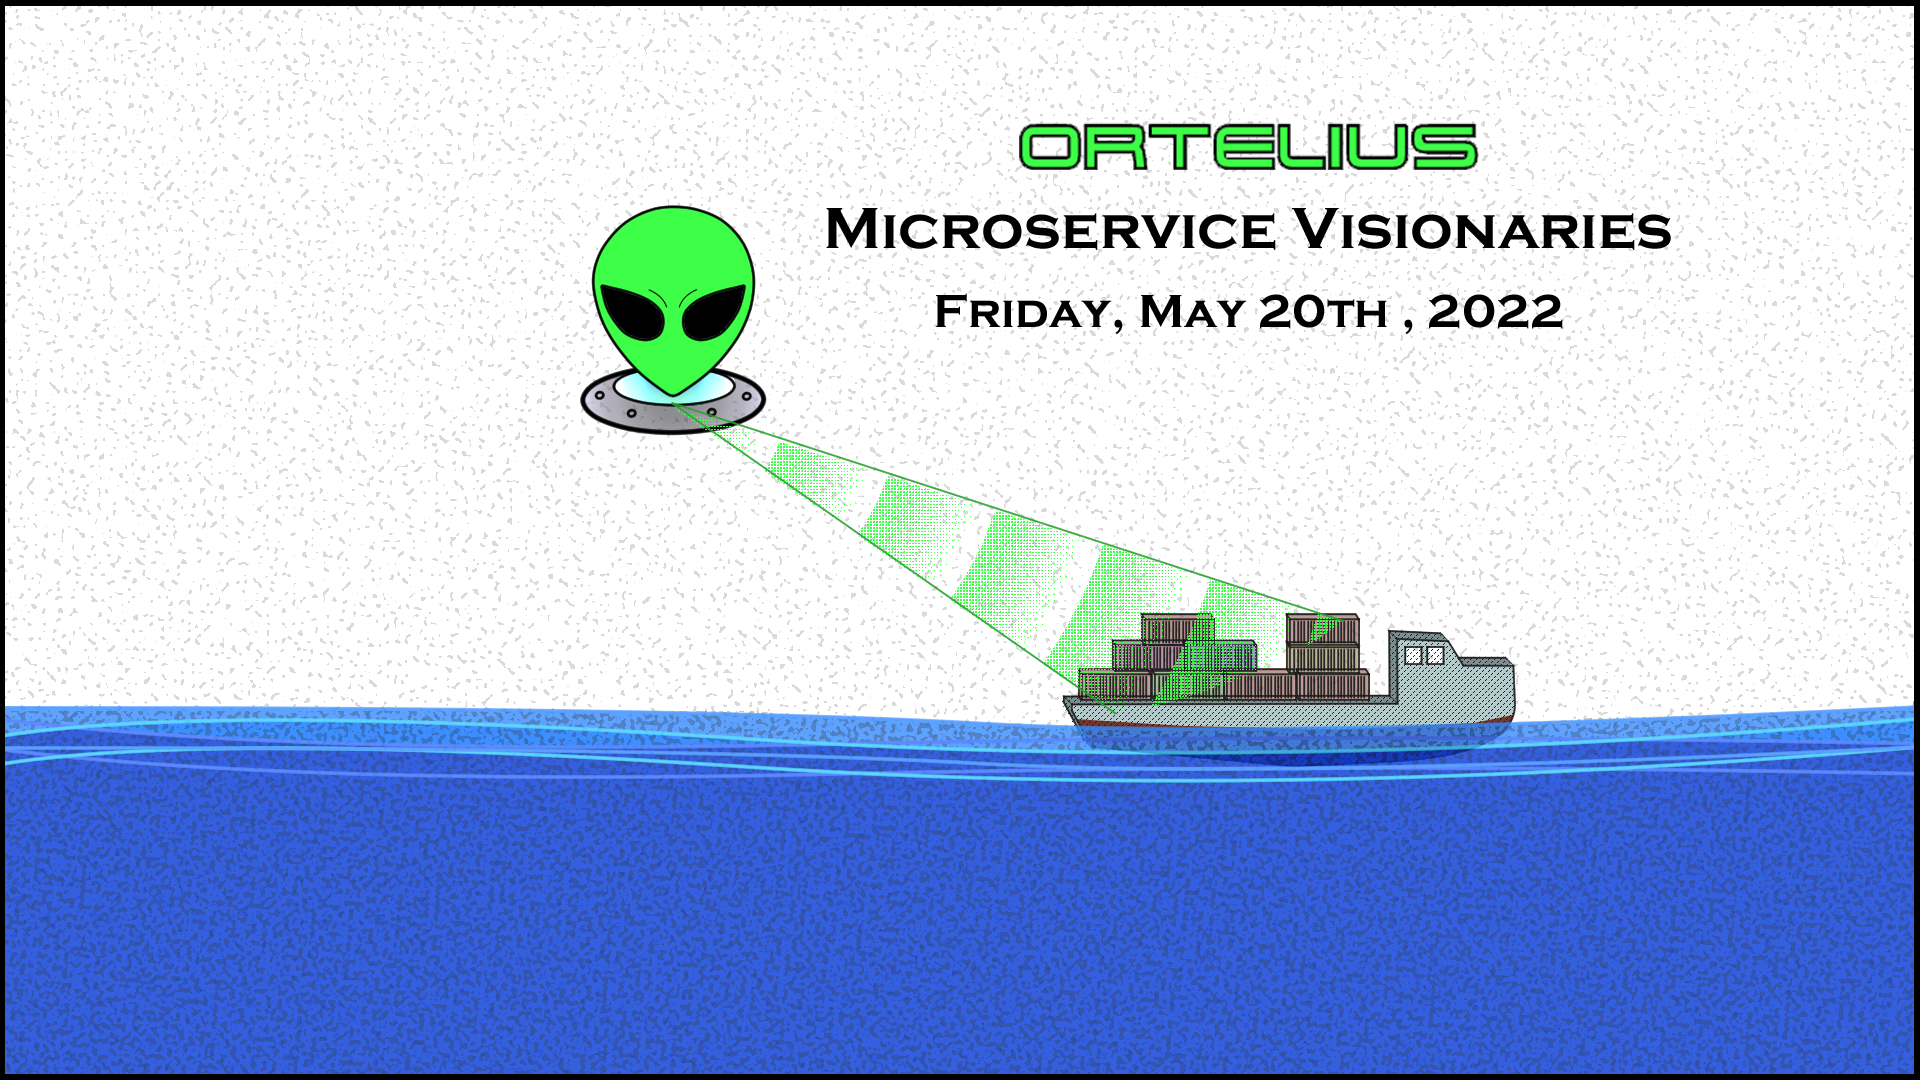 Ortelius Microservice Visionaries 2021